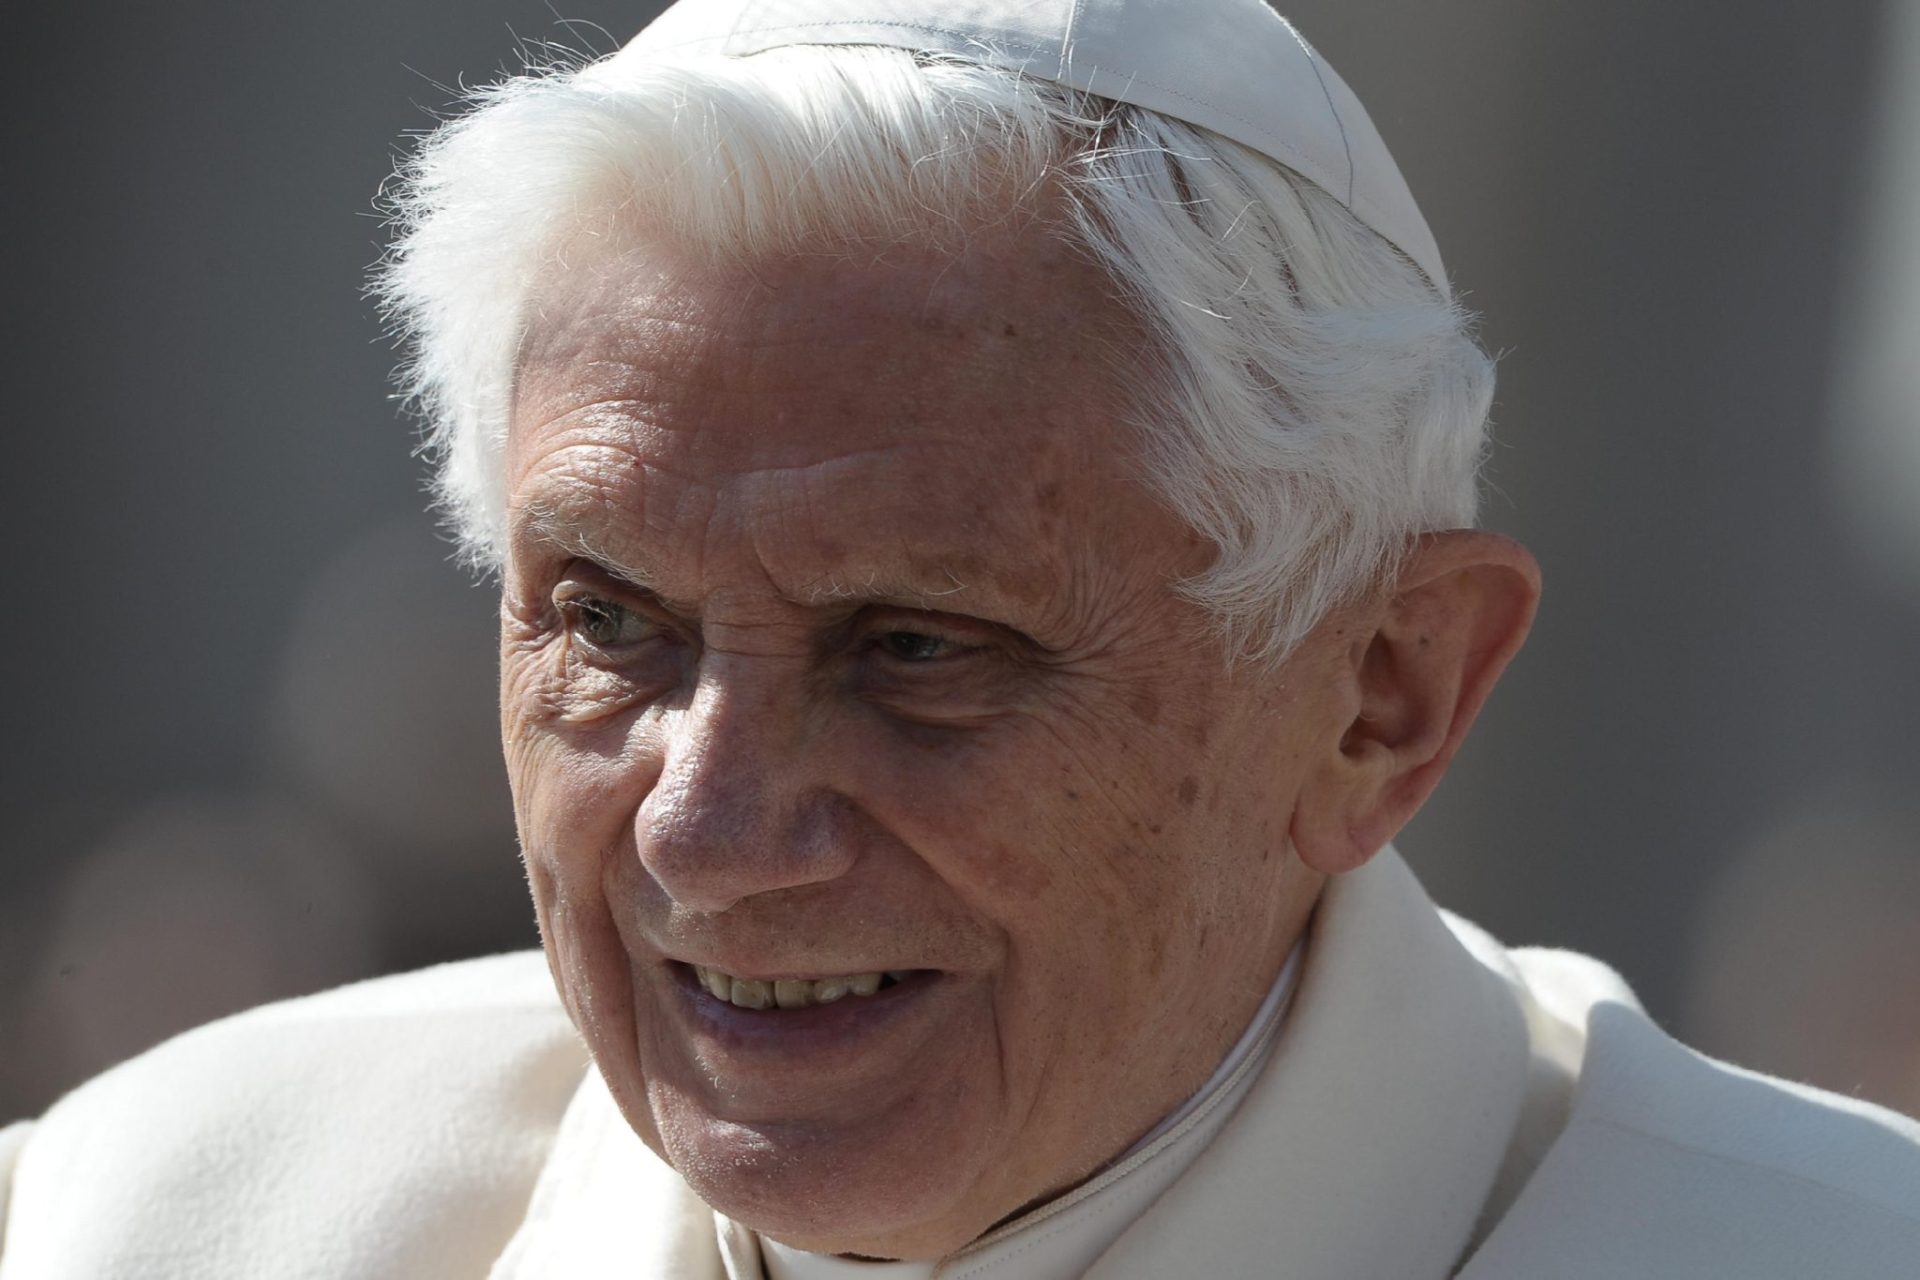 Emeritus paus Benedictus XVI overleden: ‘Een echte man Gods is van ons heen gegaan’